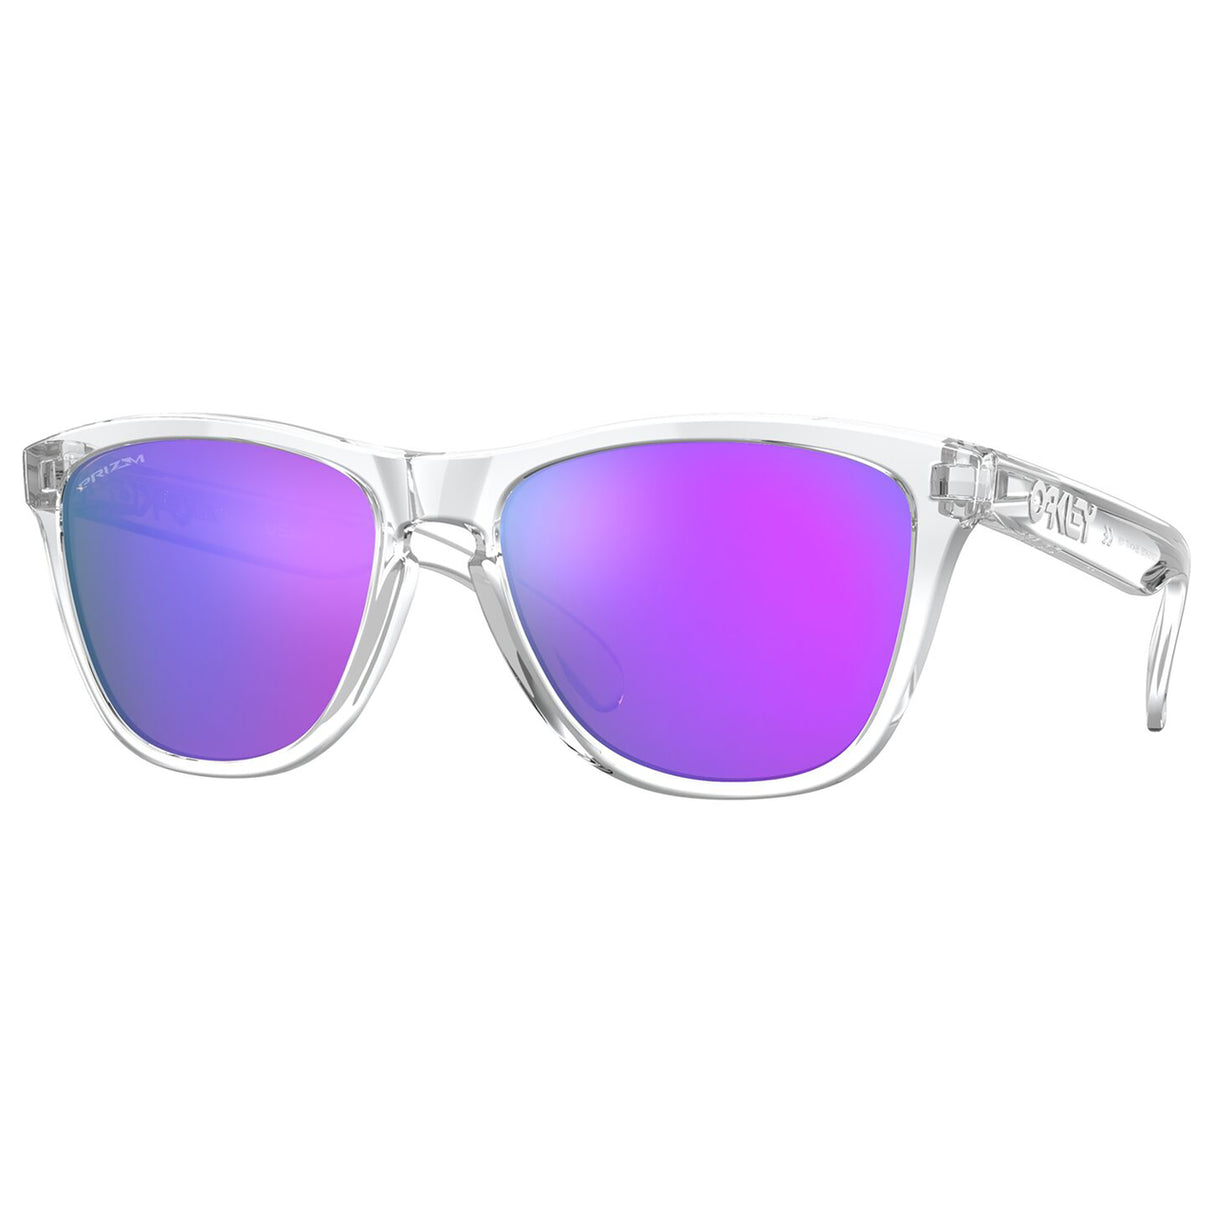 Oakley Frogskins Sunglasses (Polished Clear) Prizm Violet Lens